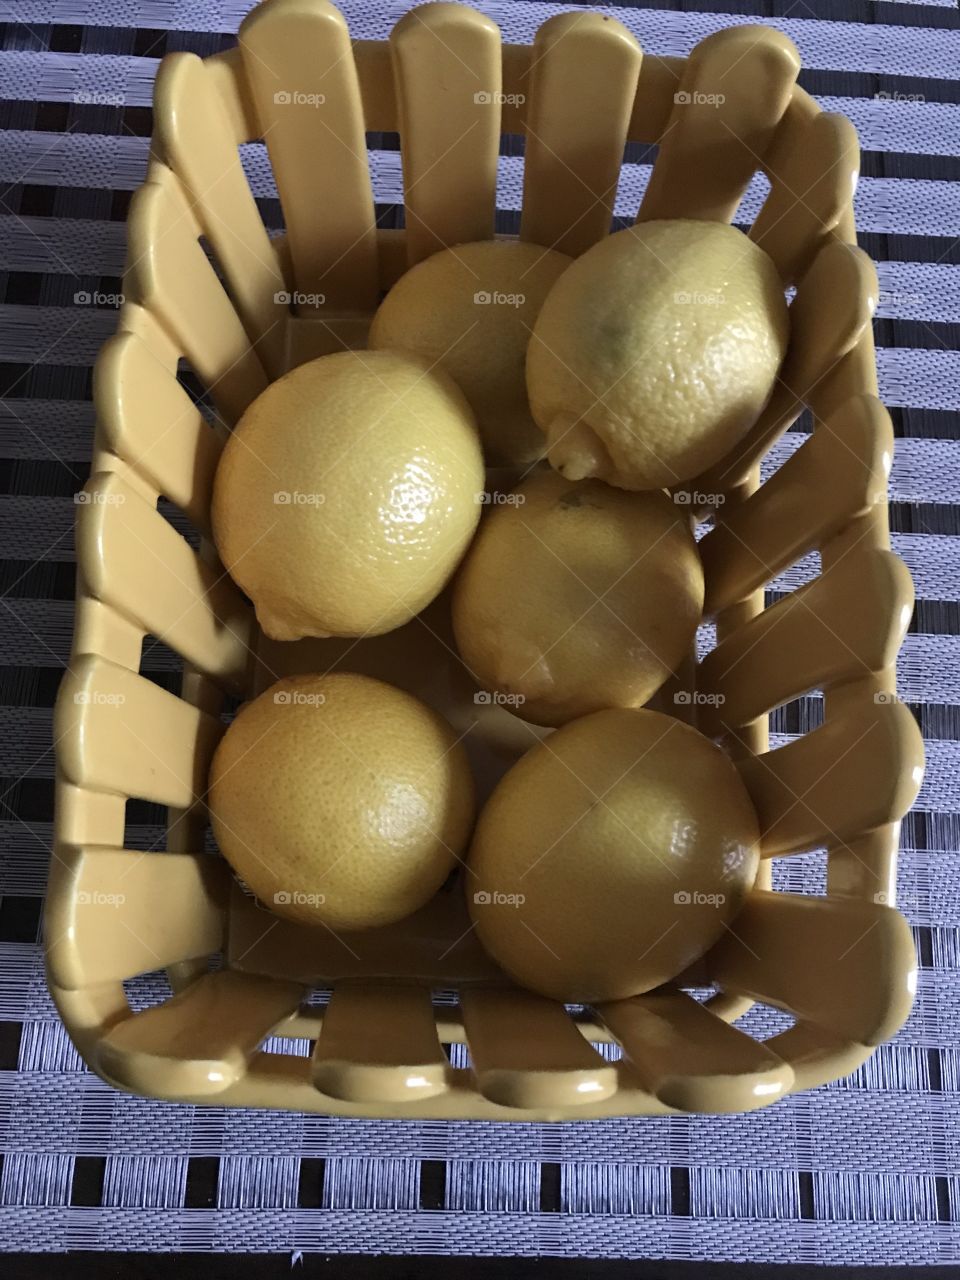 Lemons in yellow basket